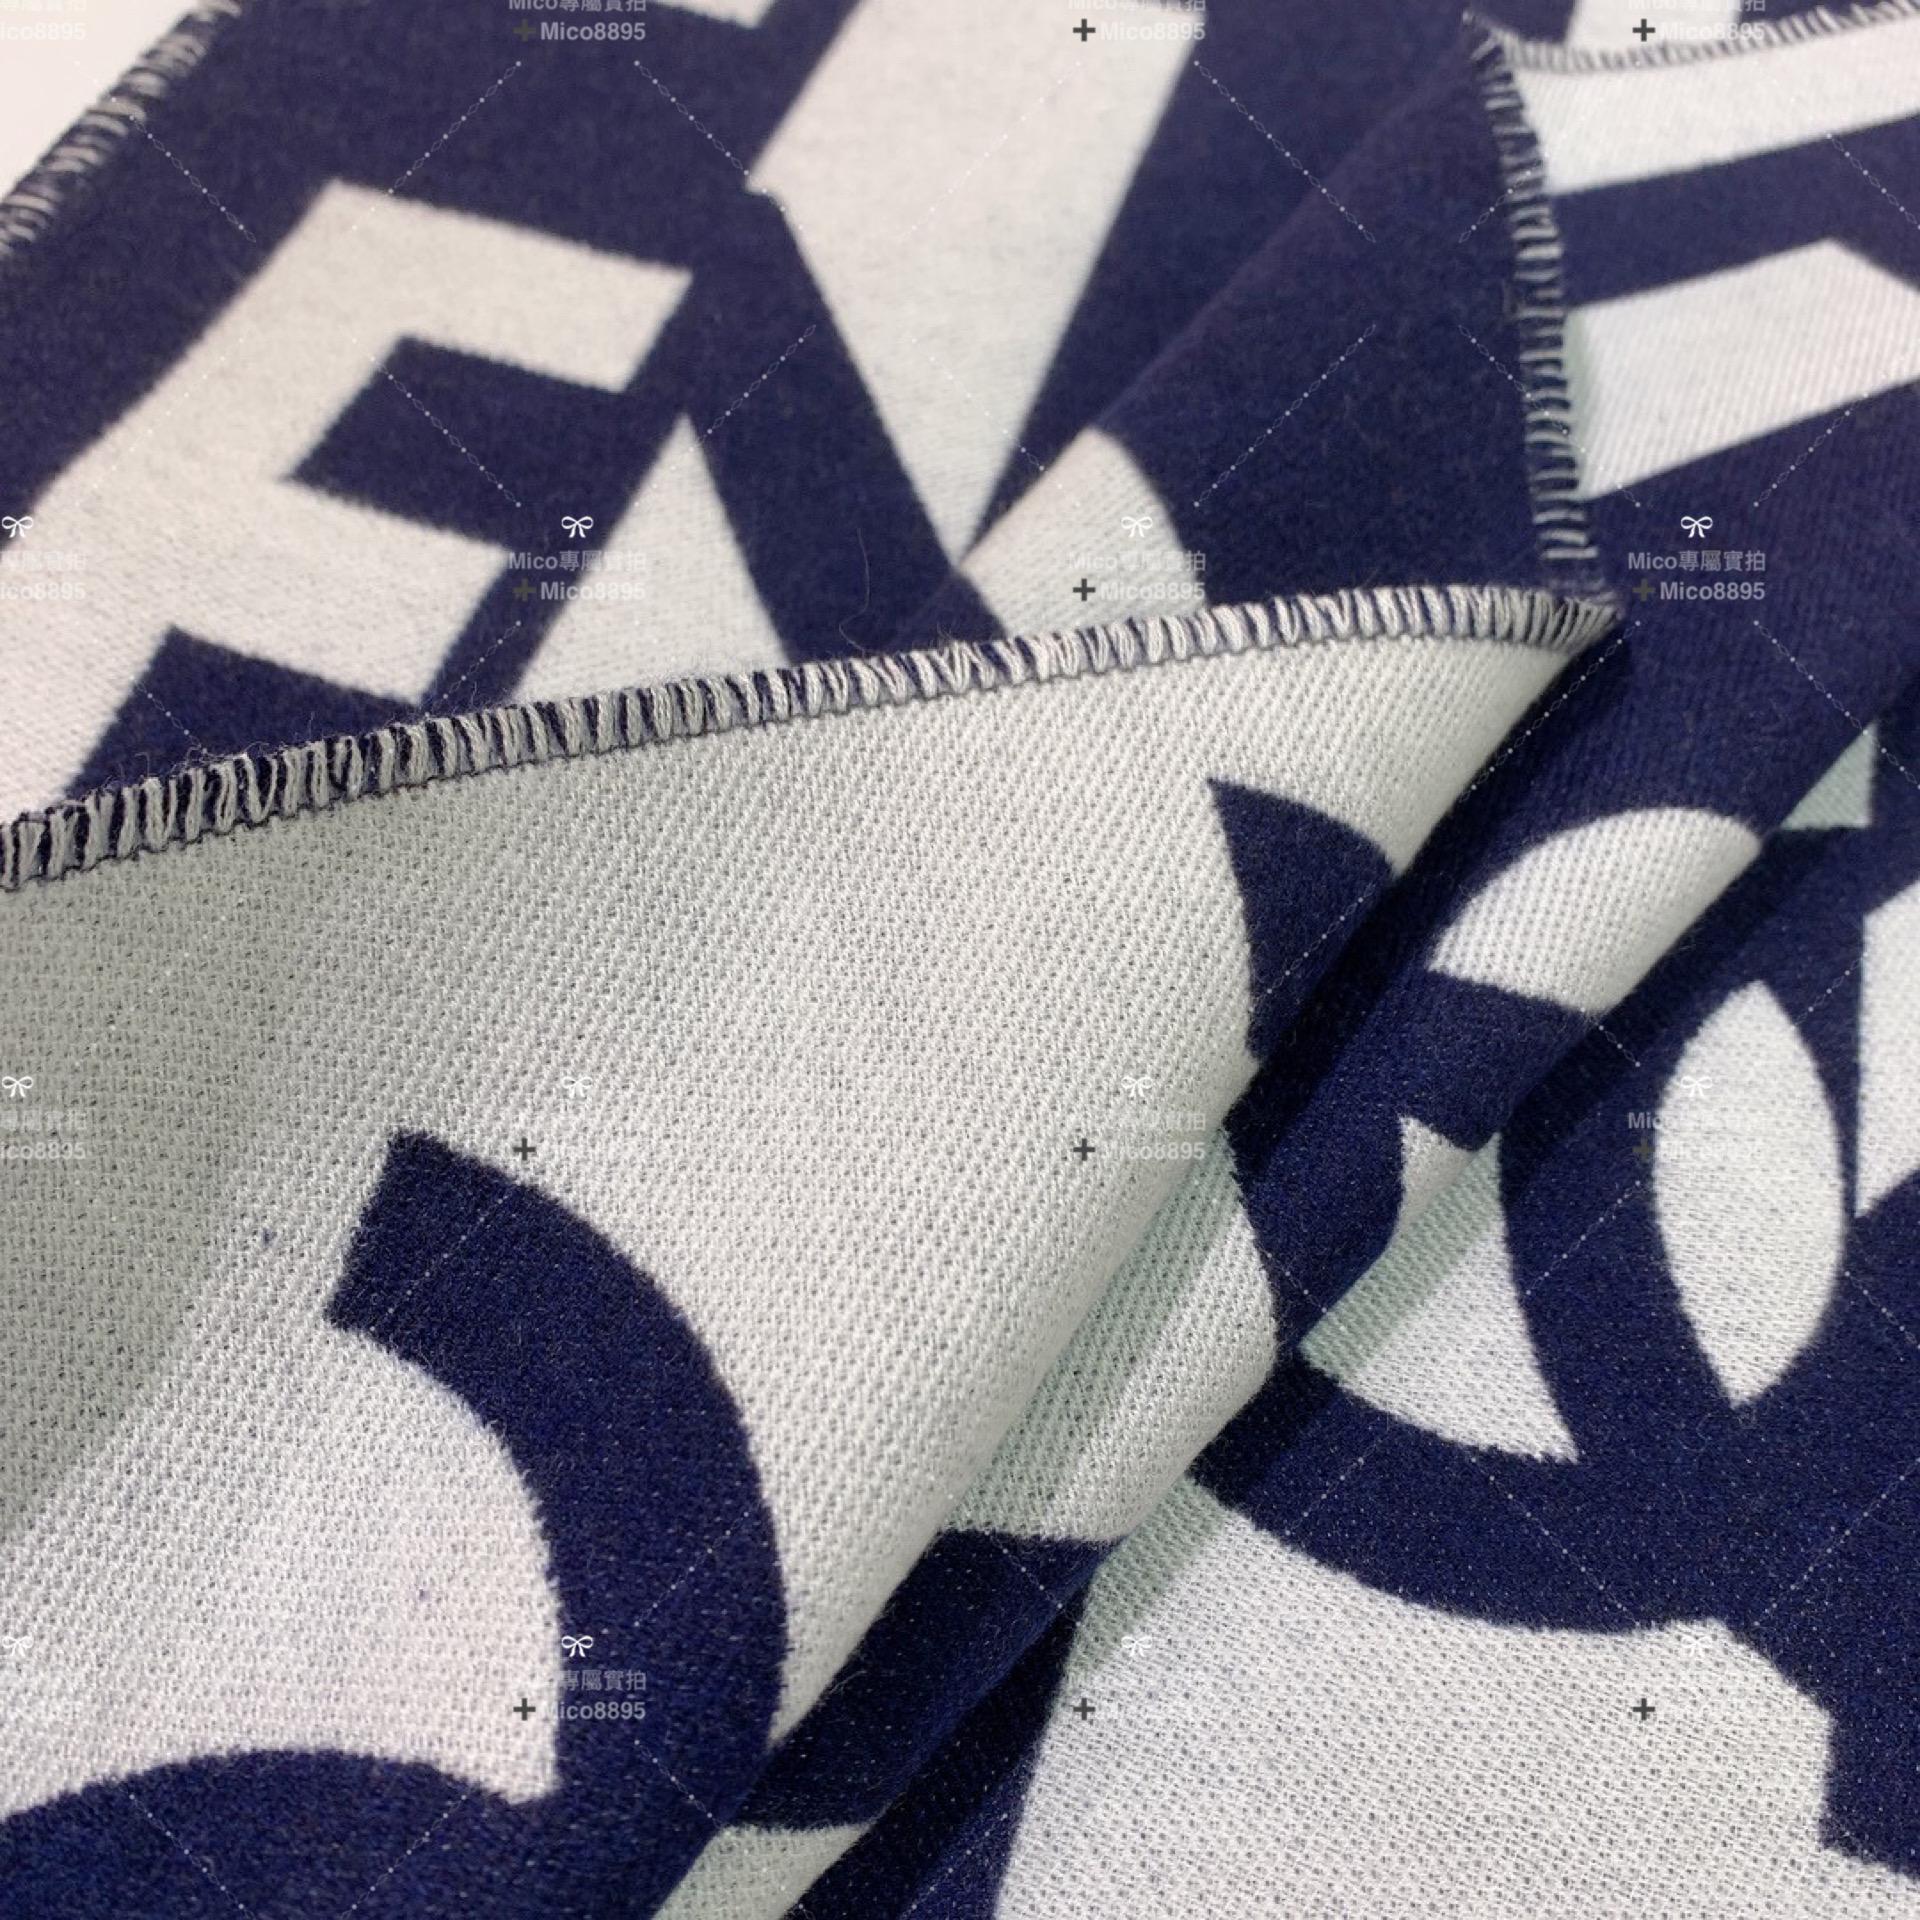 CHANEL 𝟮𝟮𝐁 冬季圍巾 小香印象字體圍巾 藍x米白 𝐒𝐢𝐳𝐞:204𝐱43cm